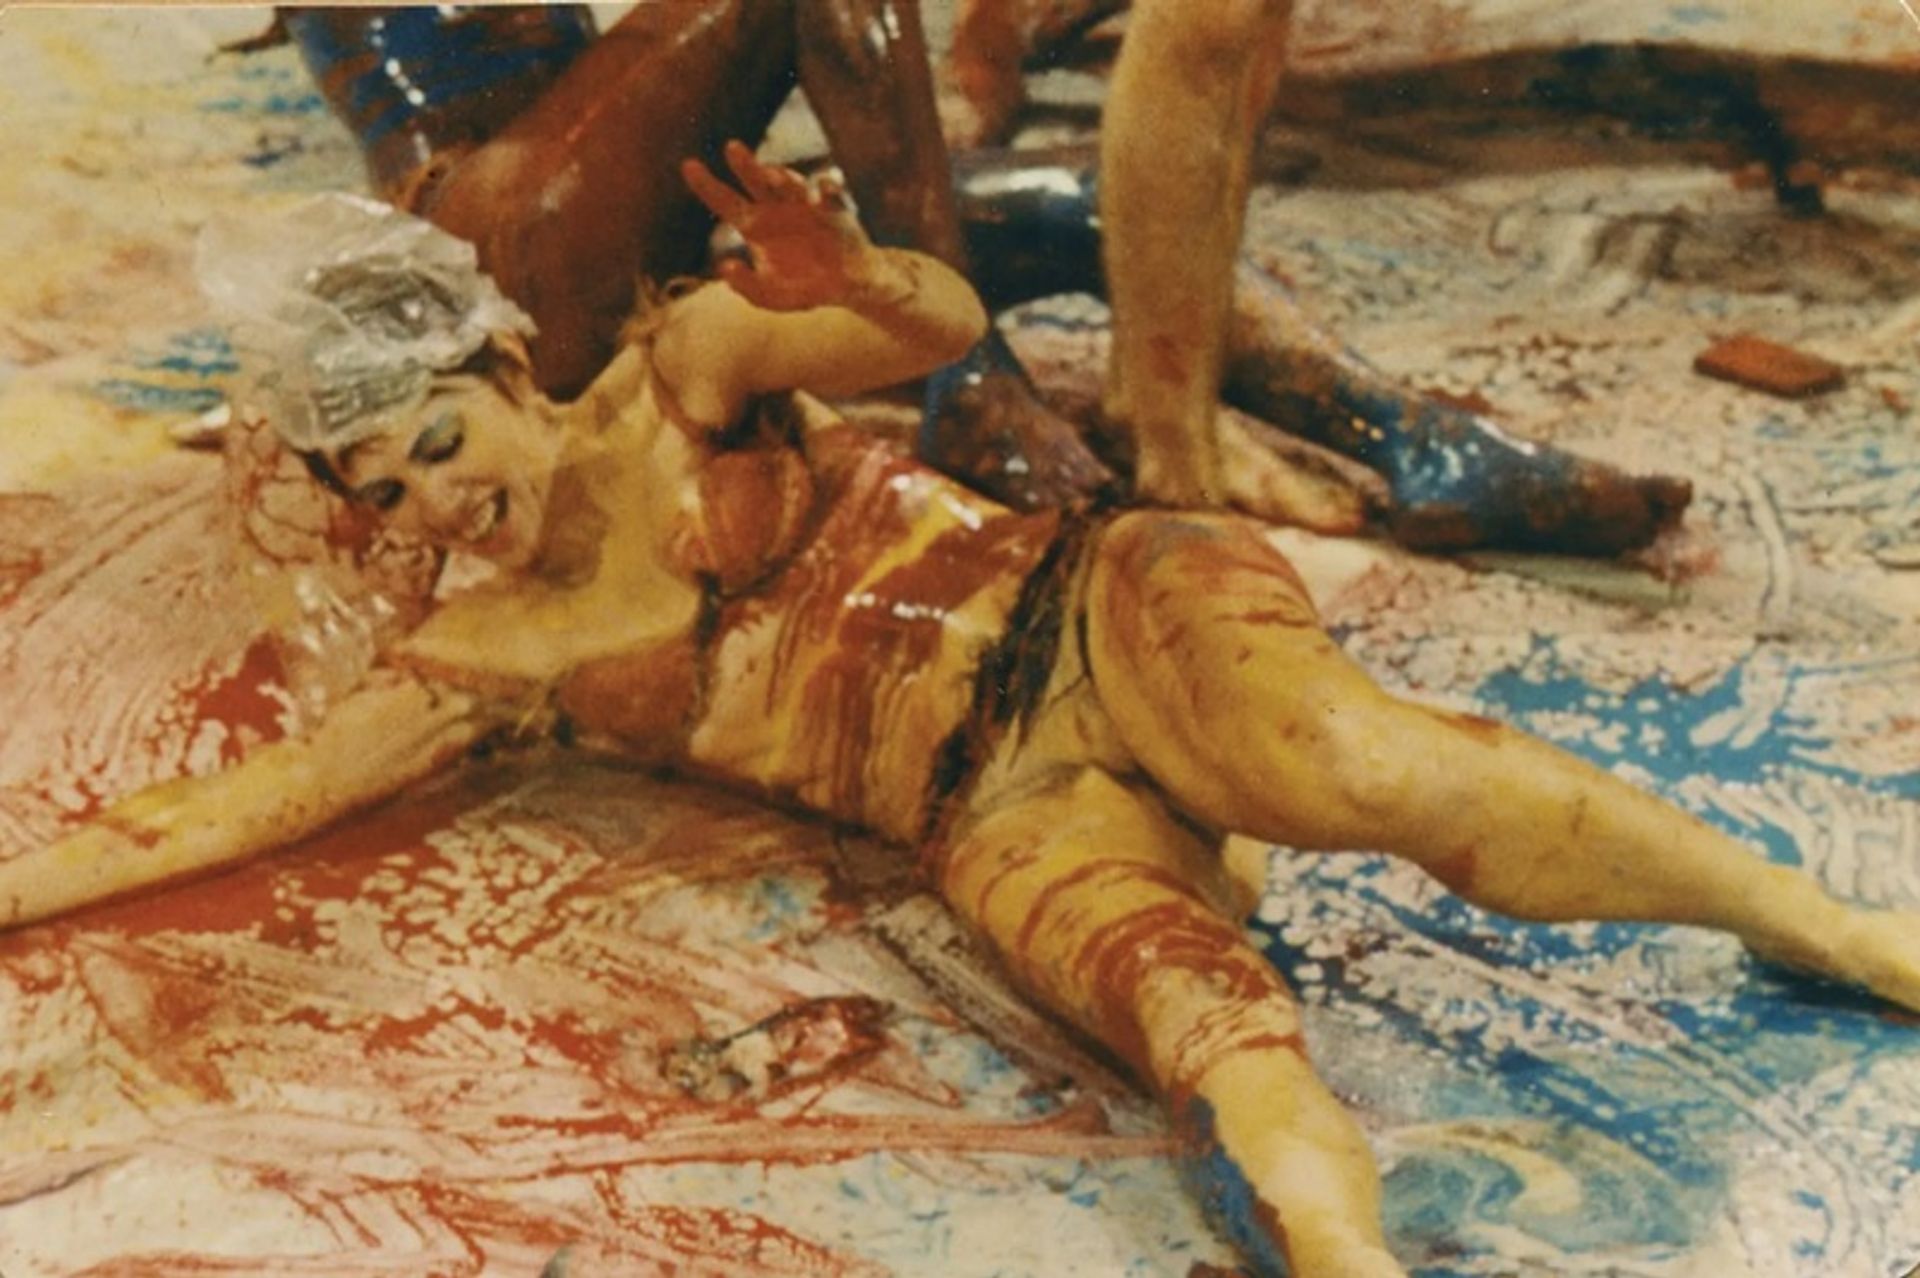 הגוף כקנבס: Meat Joy (1964)של שנימן כללה אמנים מחליקים, מגלגלים ומתפתלים בנייר, צבע ובשר נא

תמונה © עזבון של רוברט מקלרוי/מורשה על ידי VAGA/ARS